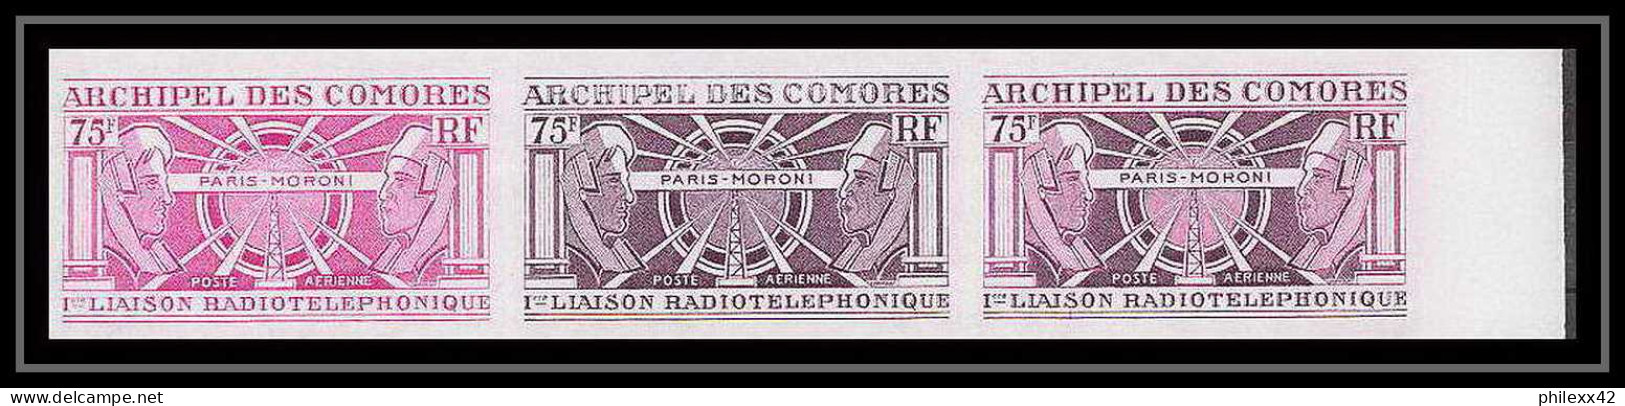 91602b Comores N° 43 1ère Liaison Radiotelephonique Moroni-Paris Bande 3 Essai Proof Non Dentelé Imperf ** MNH Telecom - Airmail